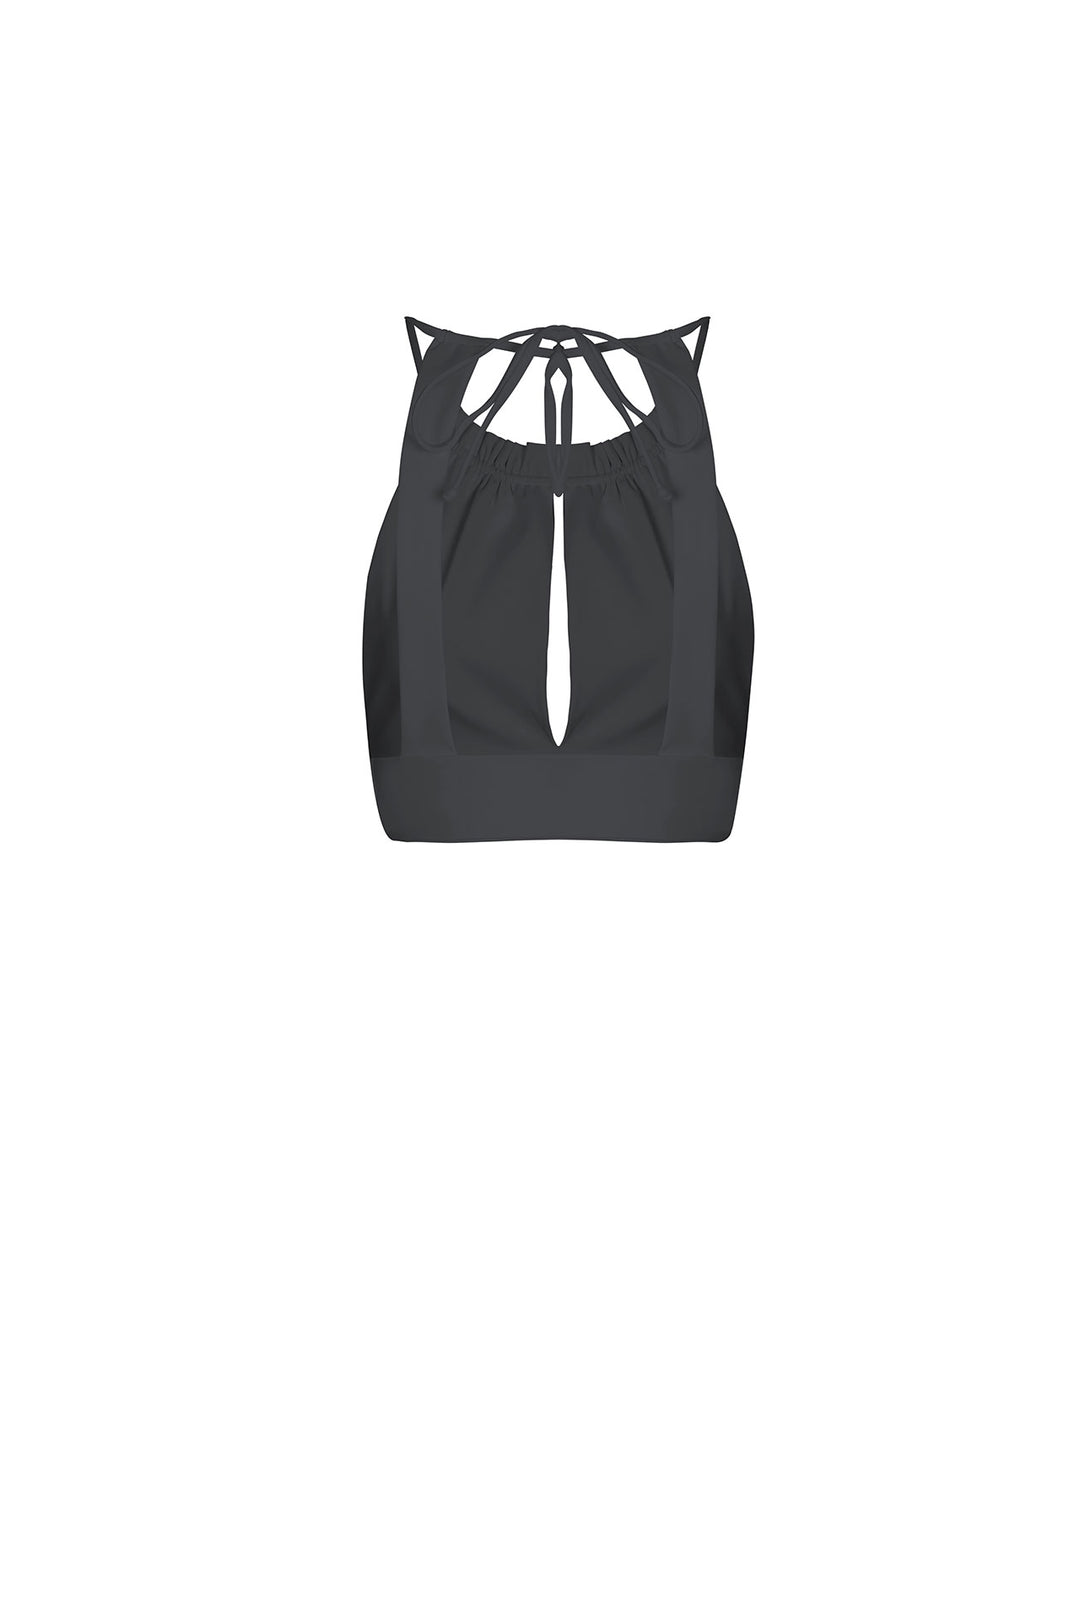 Anitta's Off-the-Shoulder Bra Shirt and Black Miniskirt